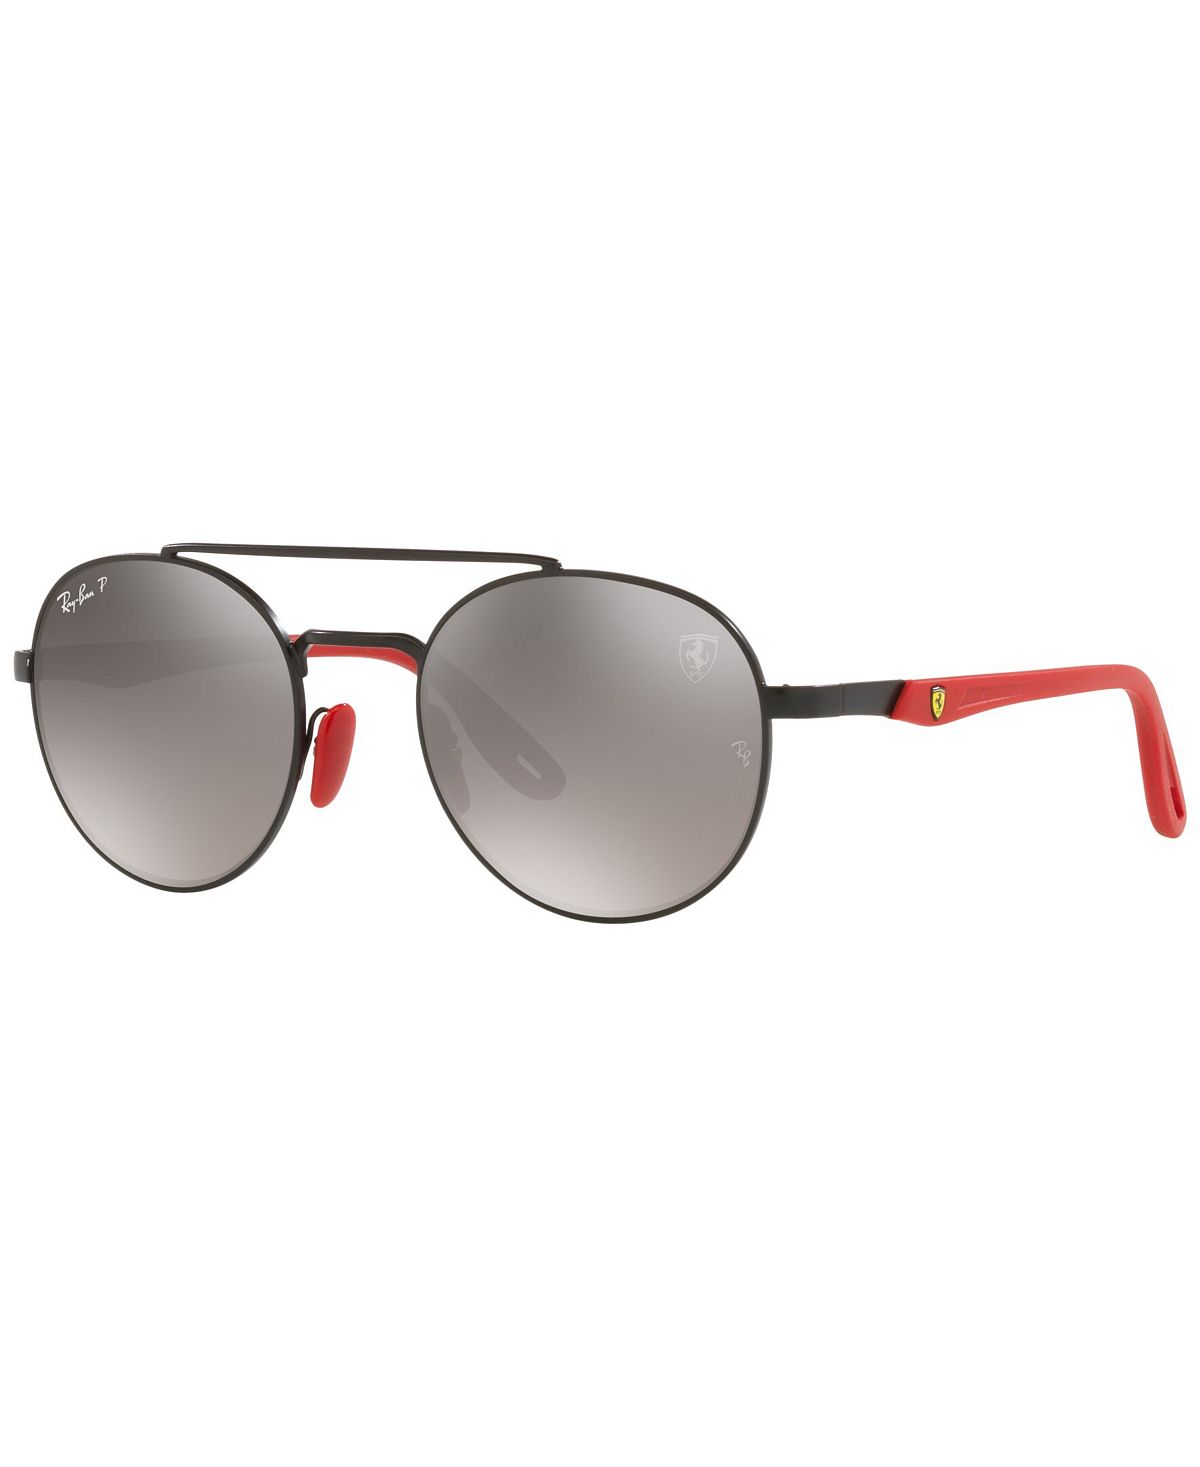 RB3696M Поляризованные солнцезащитные очки унисекс Scuderia Ferrari Collection 51 Ray-Ban, черный